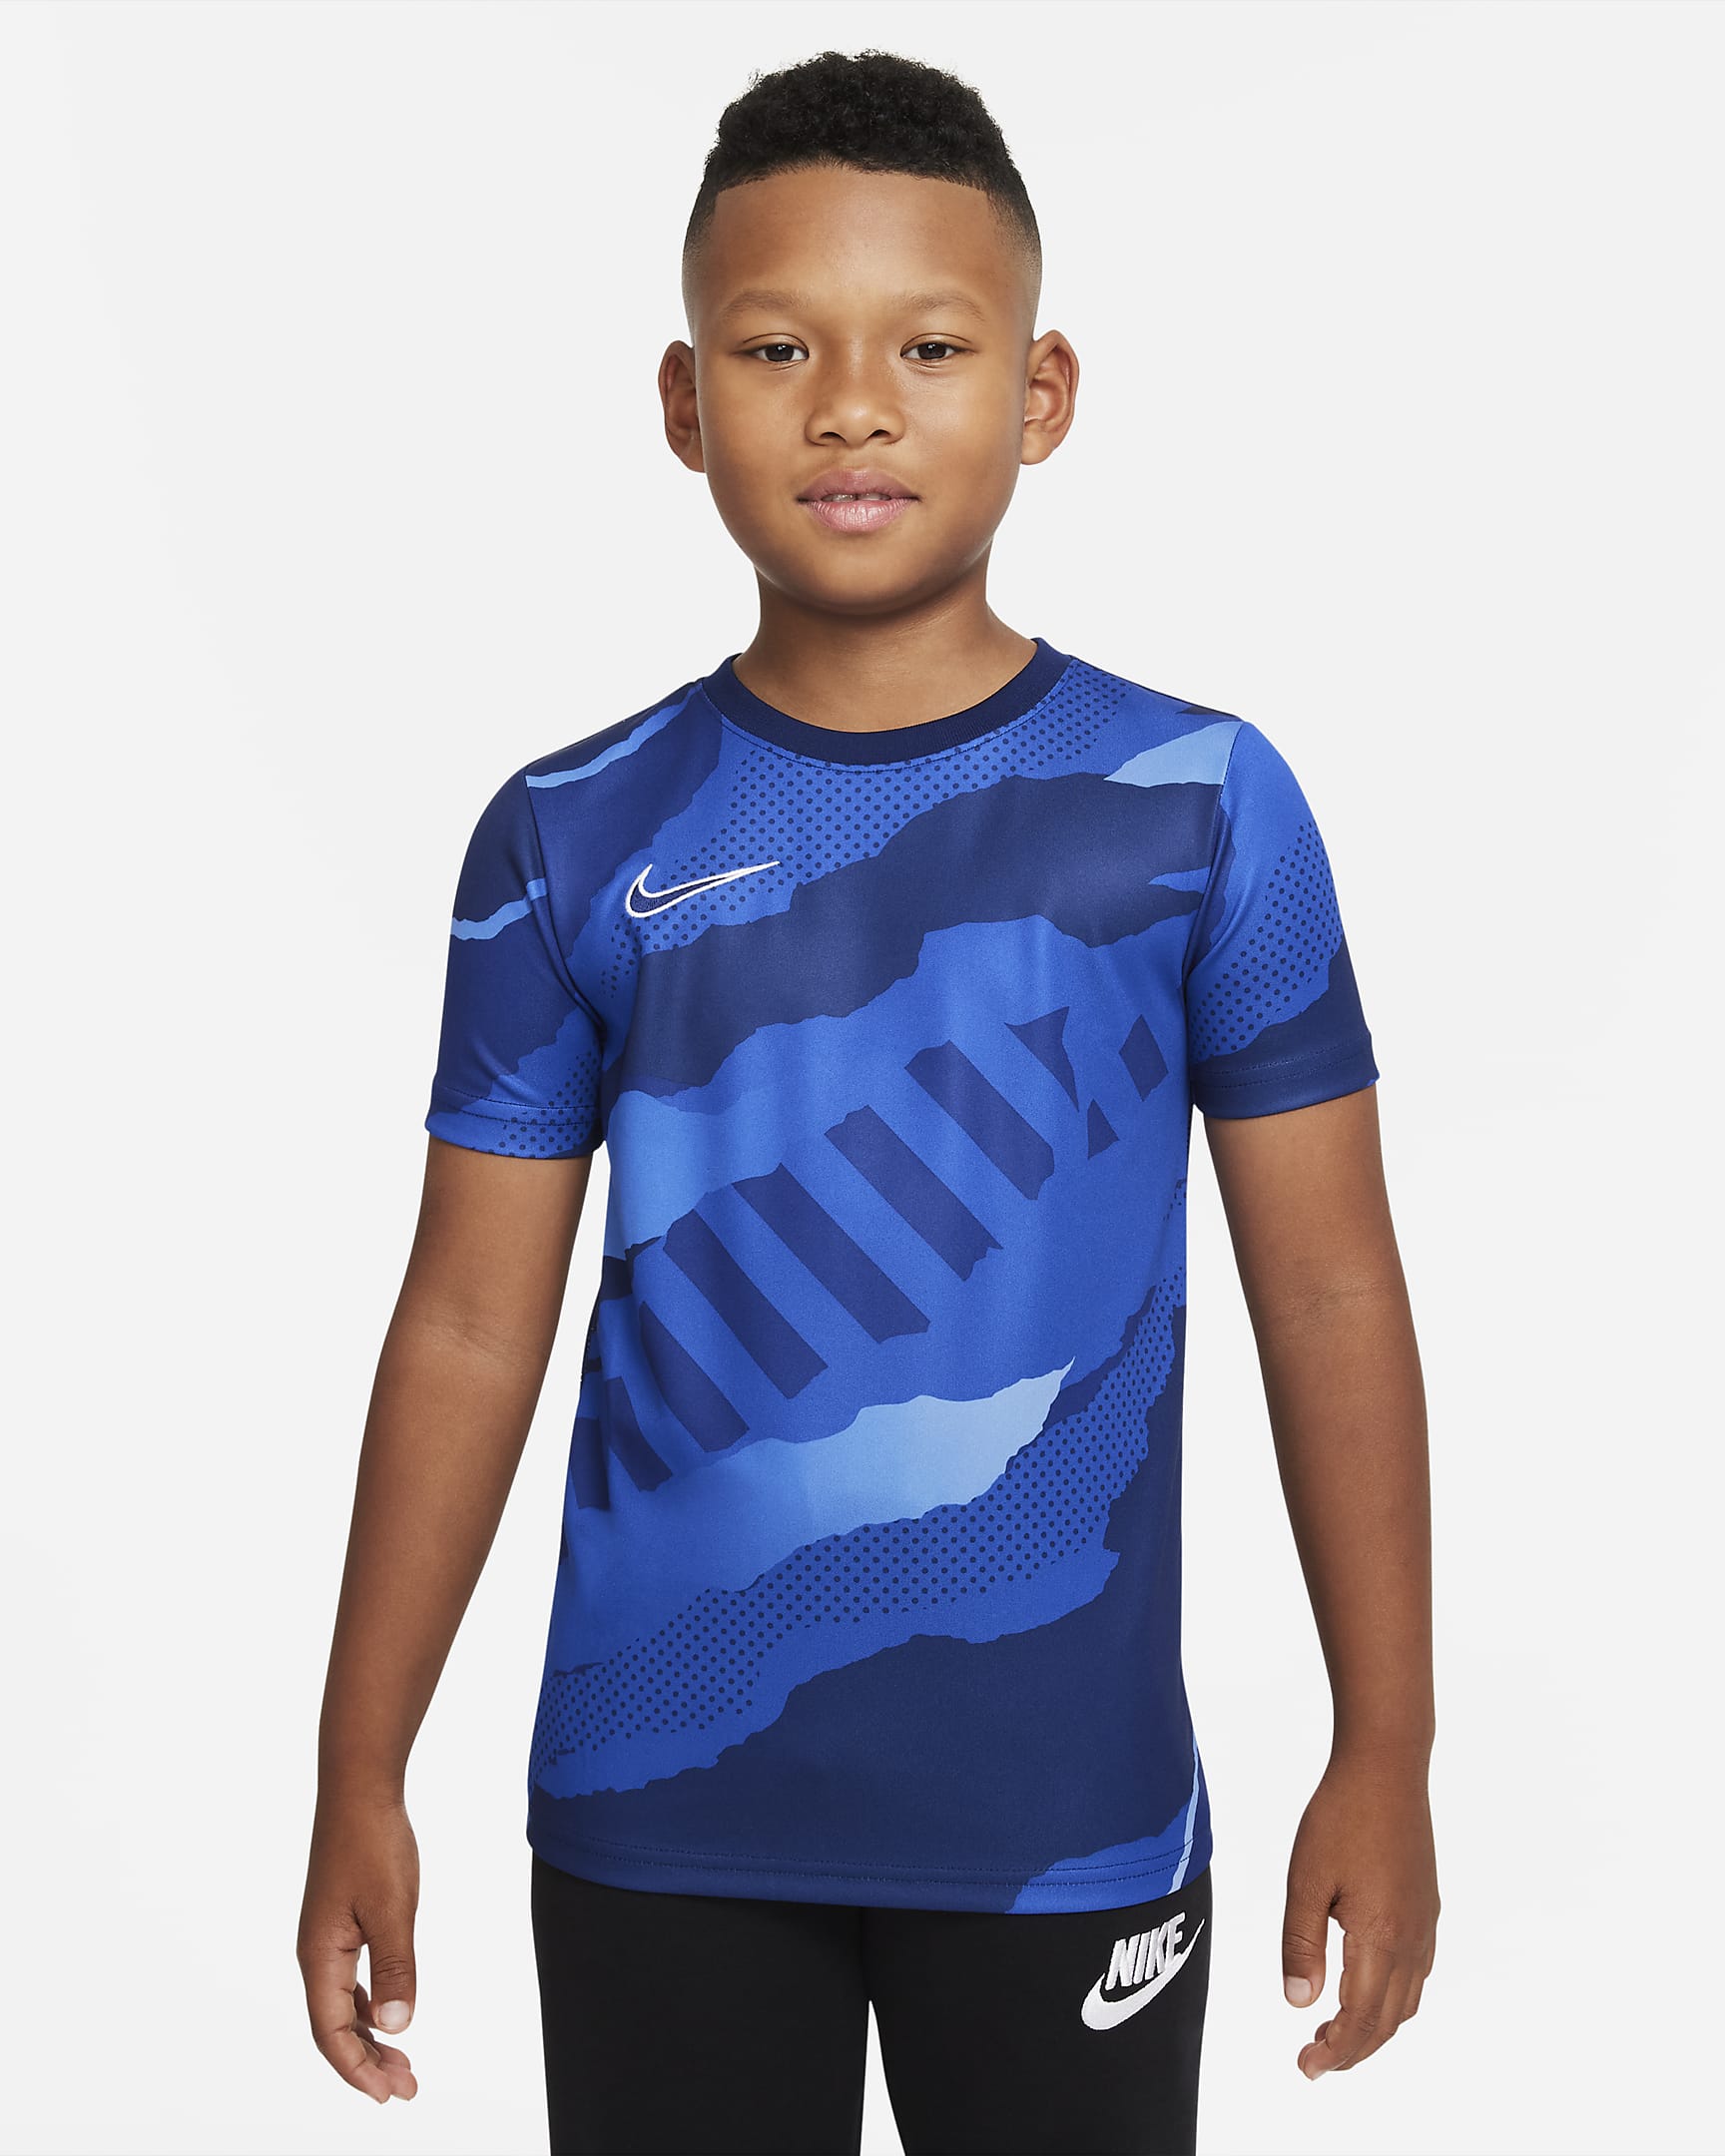 Nike Older Kids' Short-Sleeve Football Top. Nike VN